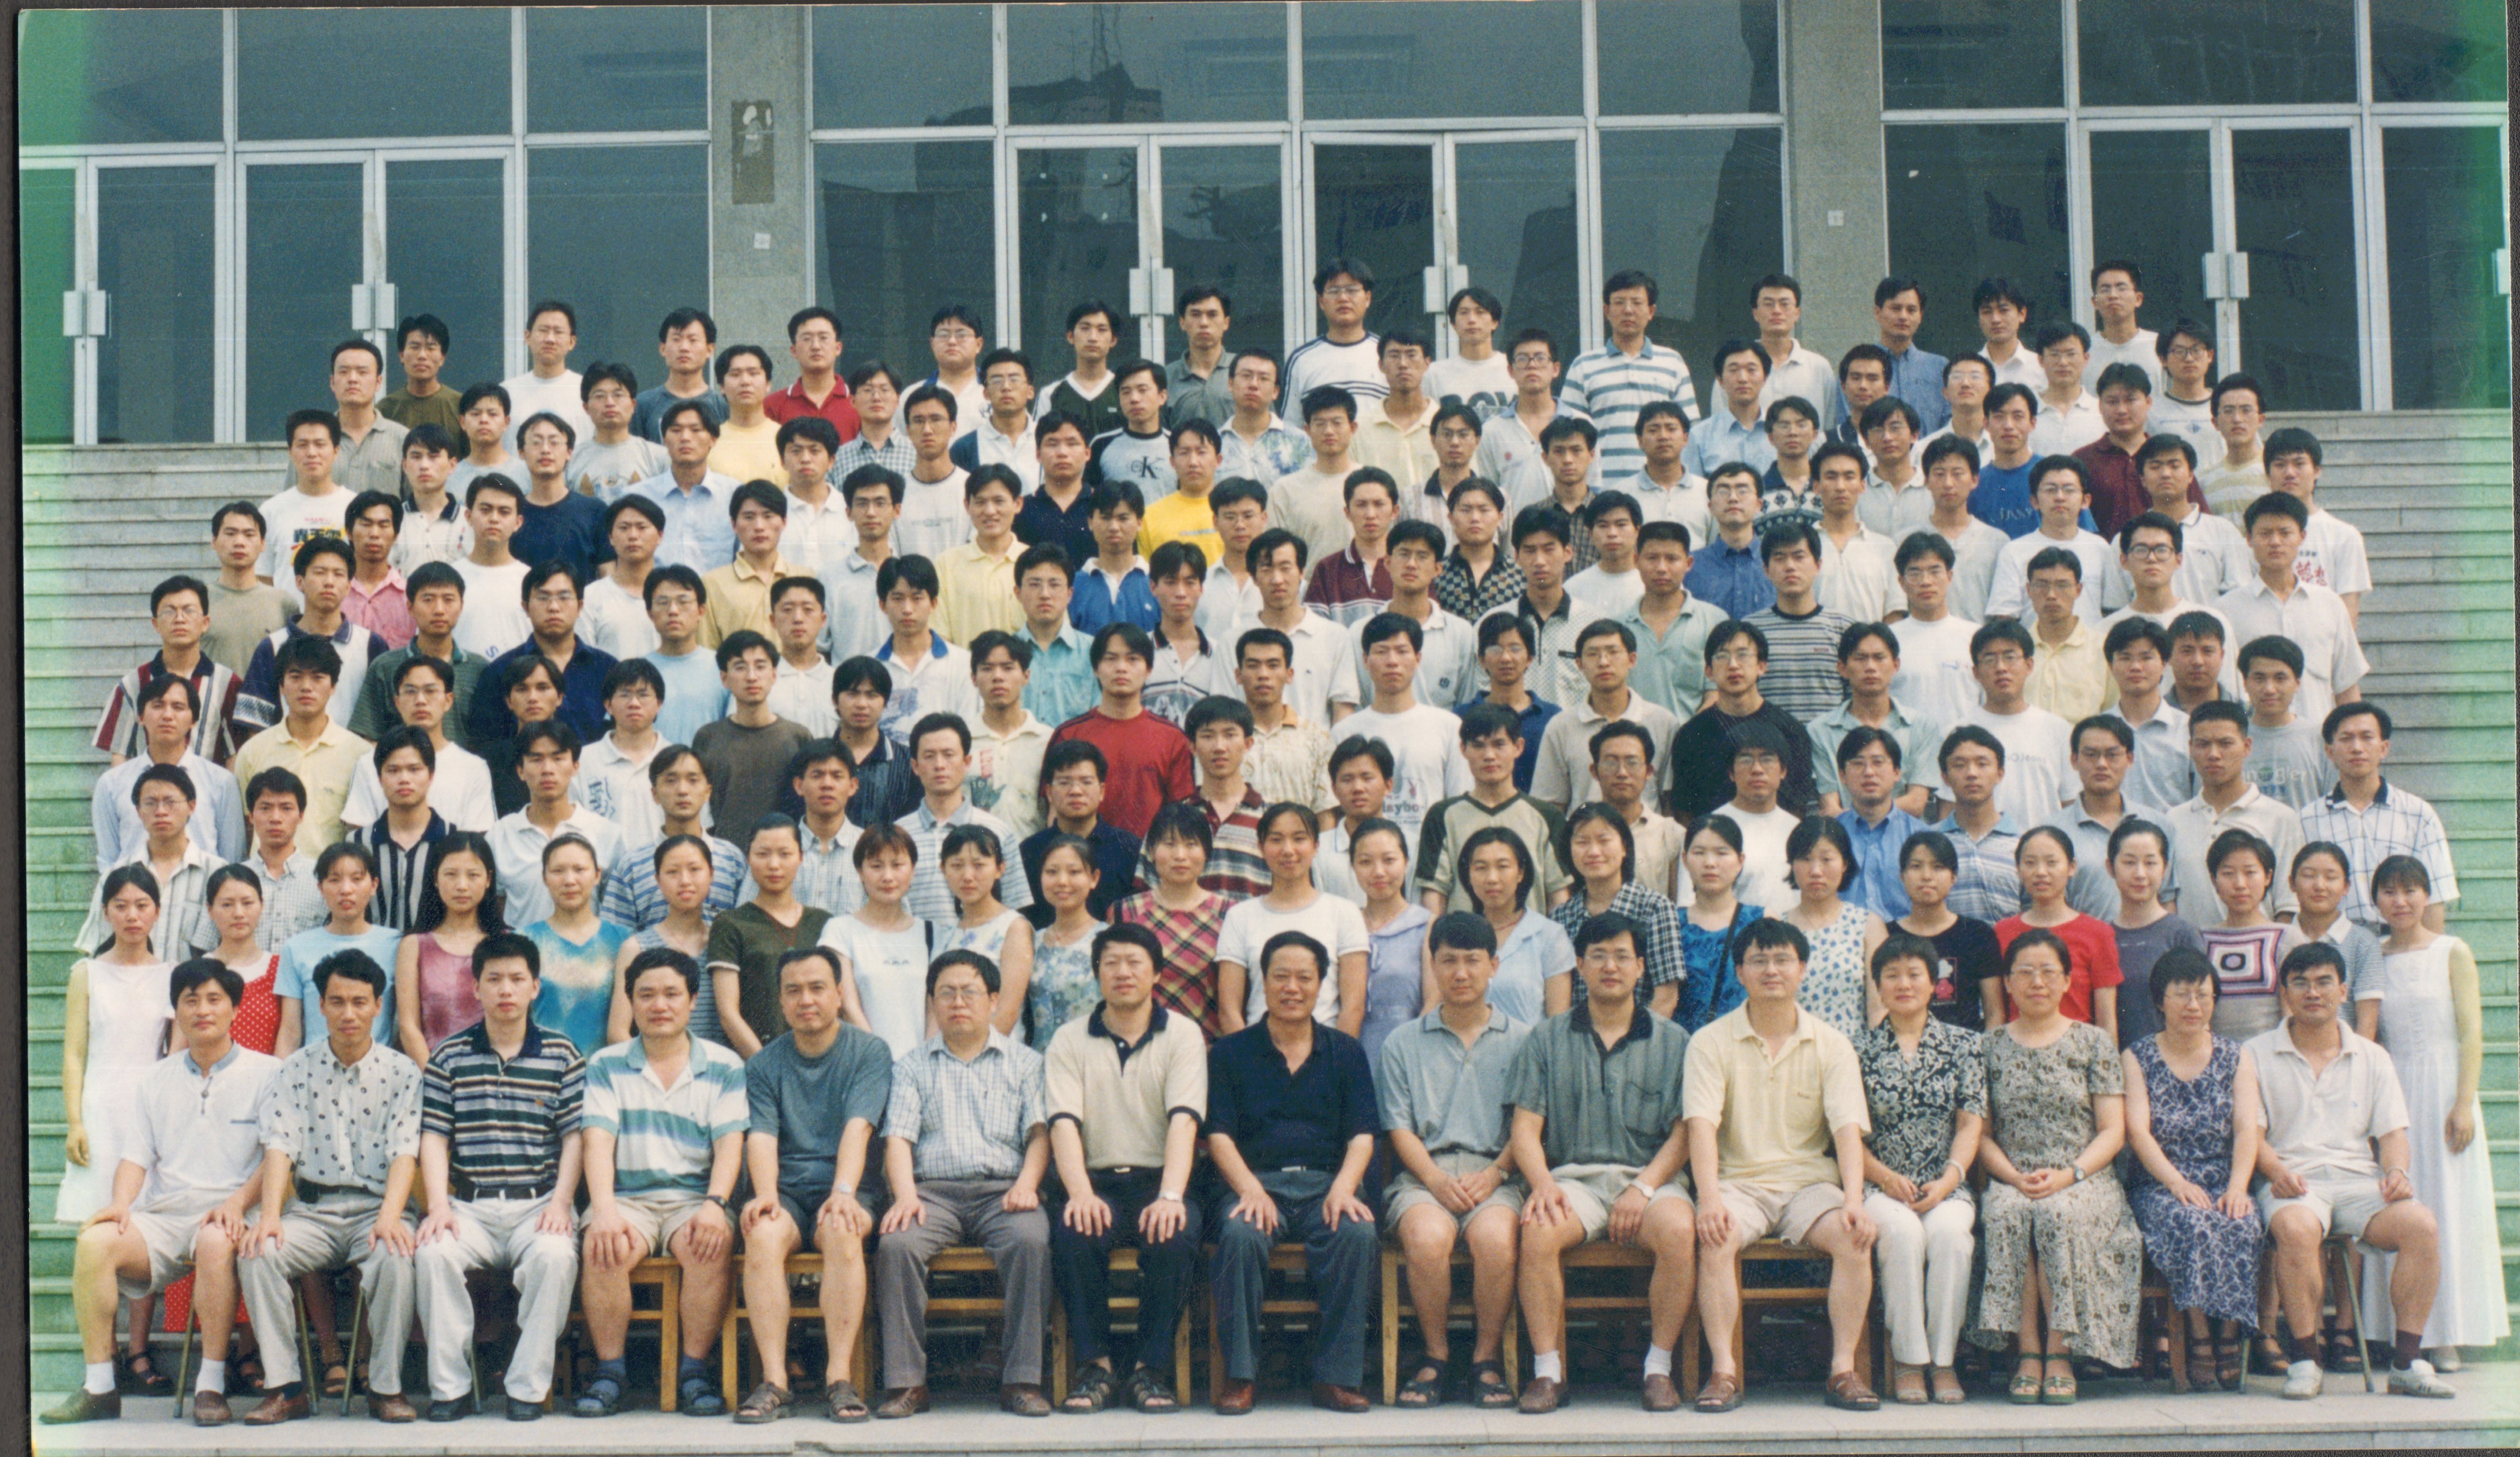 北京石油化工学院机械工程学院2000届毕业生合影-1.jpg